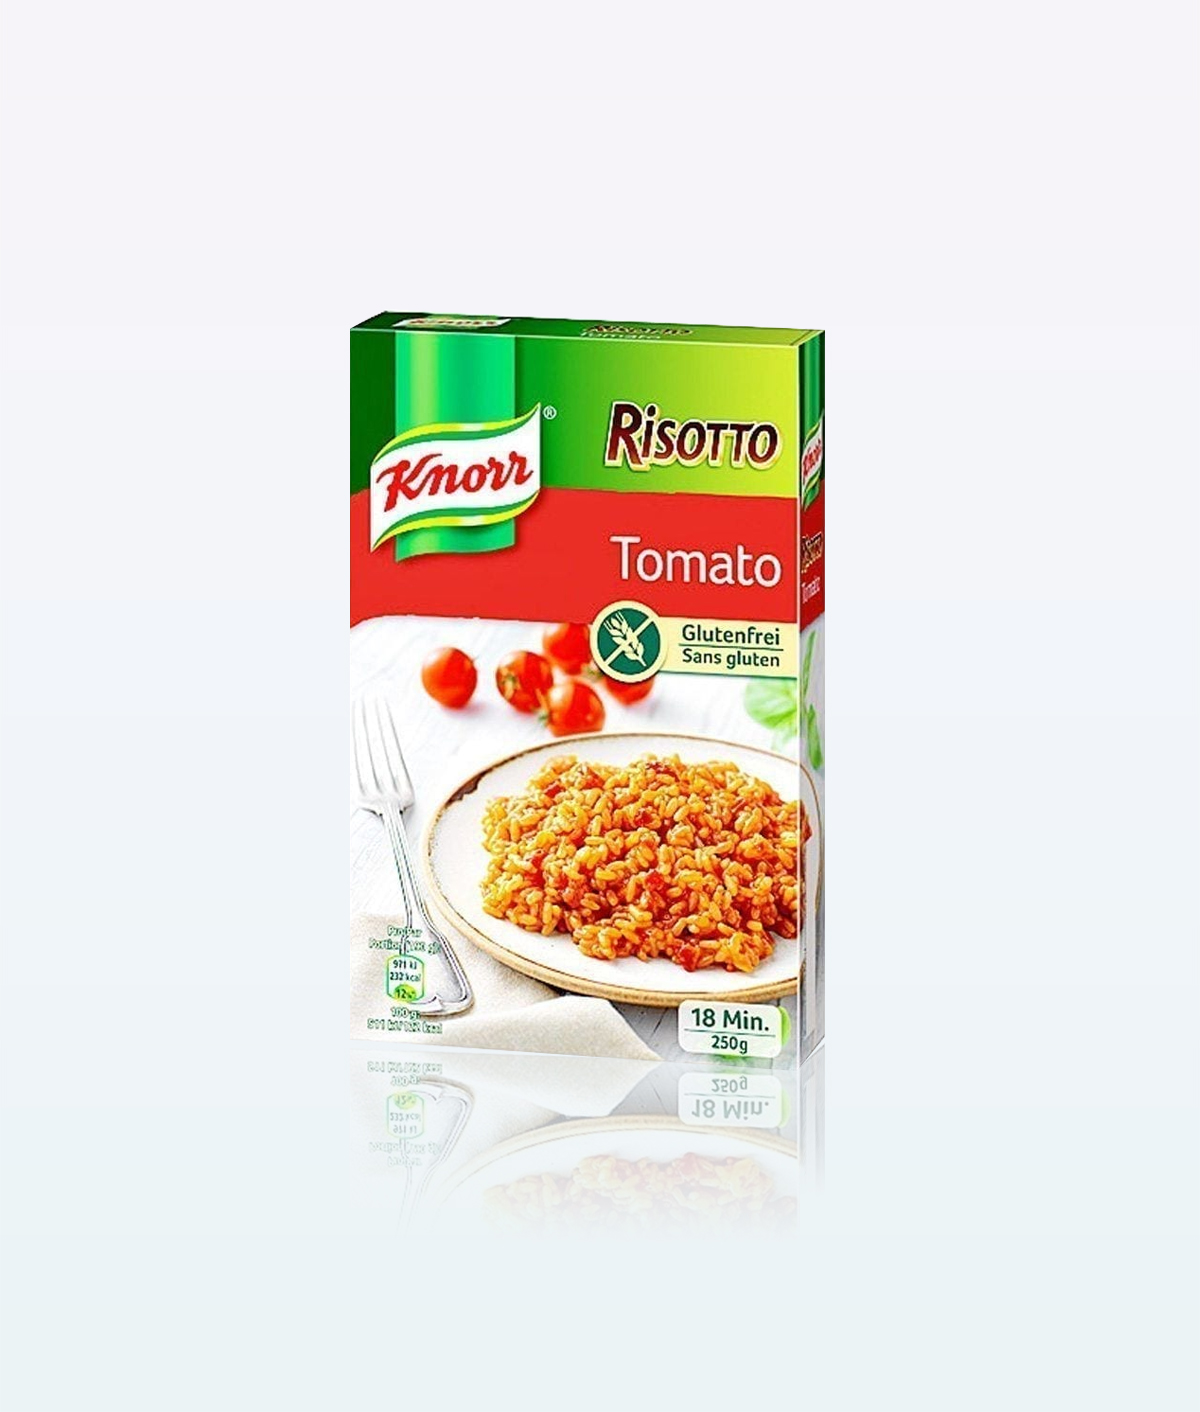 Knorr marinade - Der TOP-Favorit unserer Tester